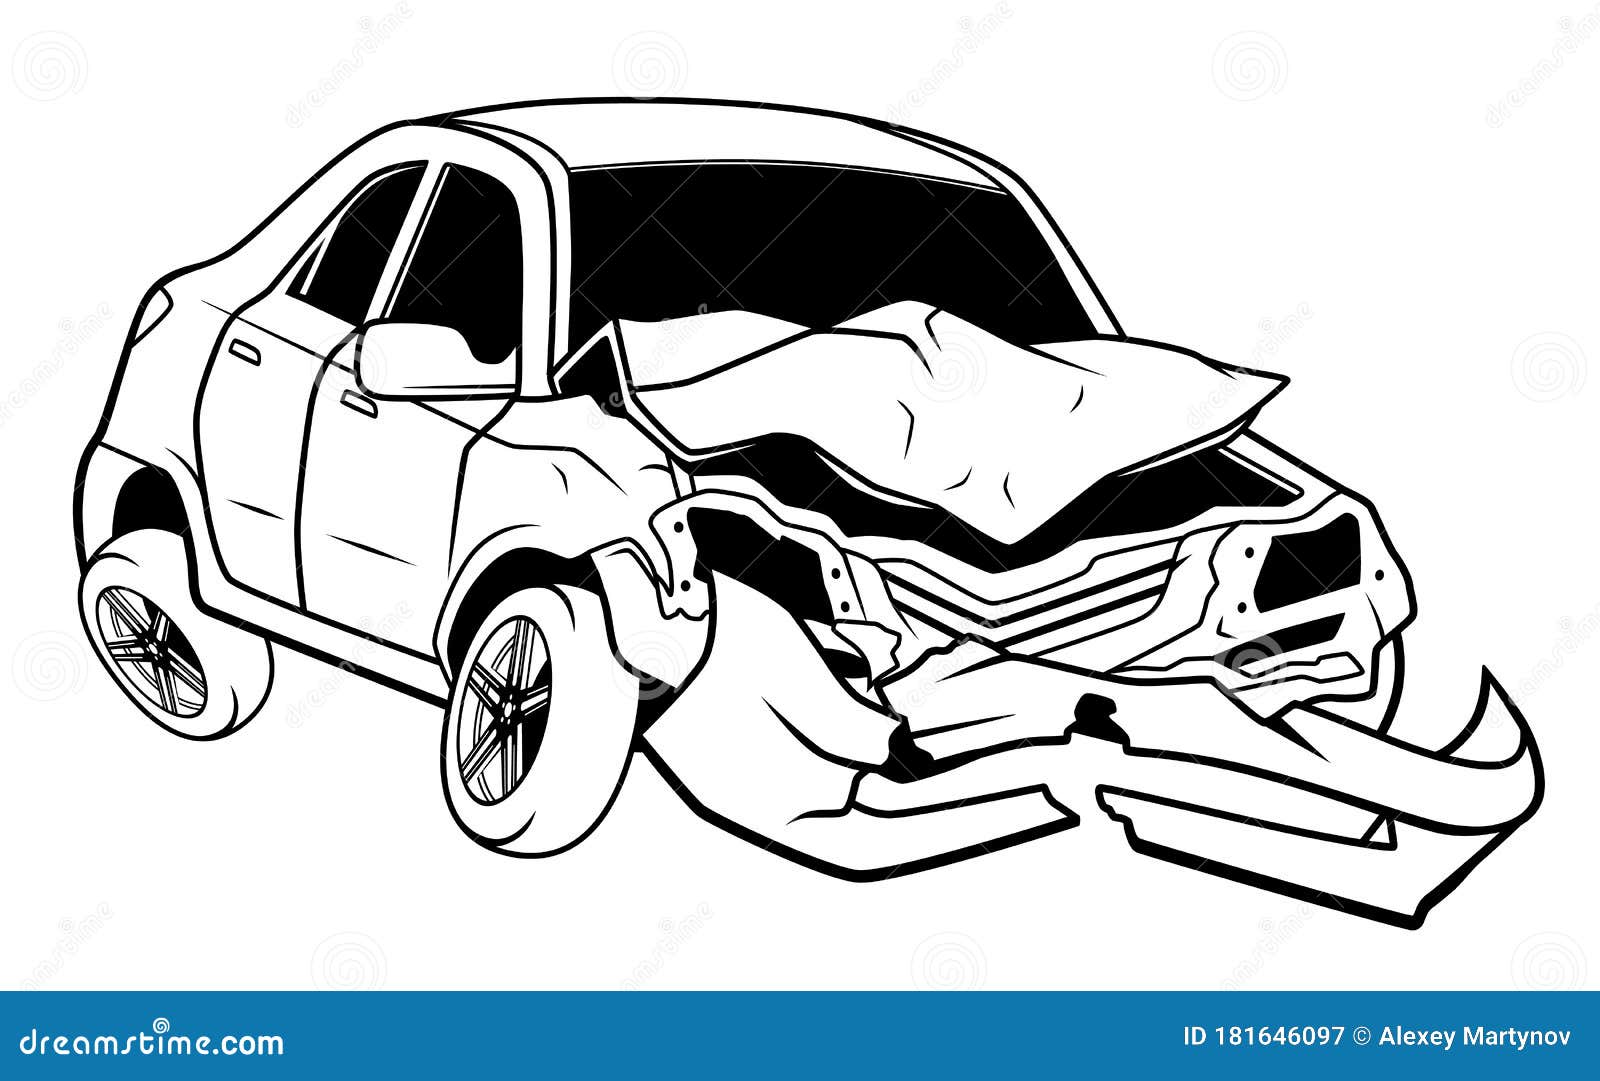 Desenhos para colorir de desenho de um acidente de carro para